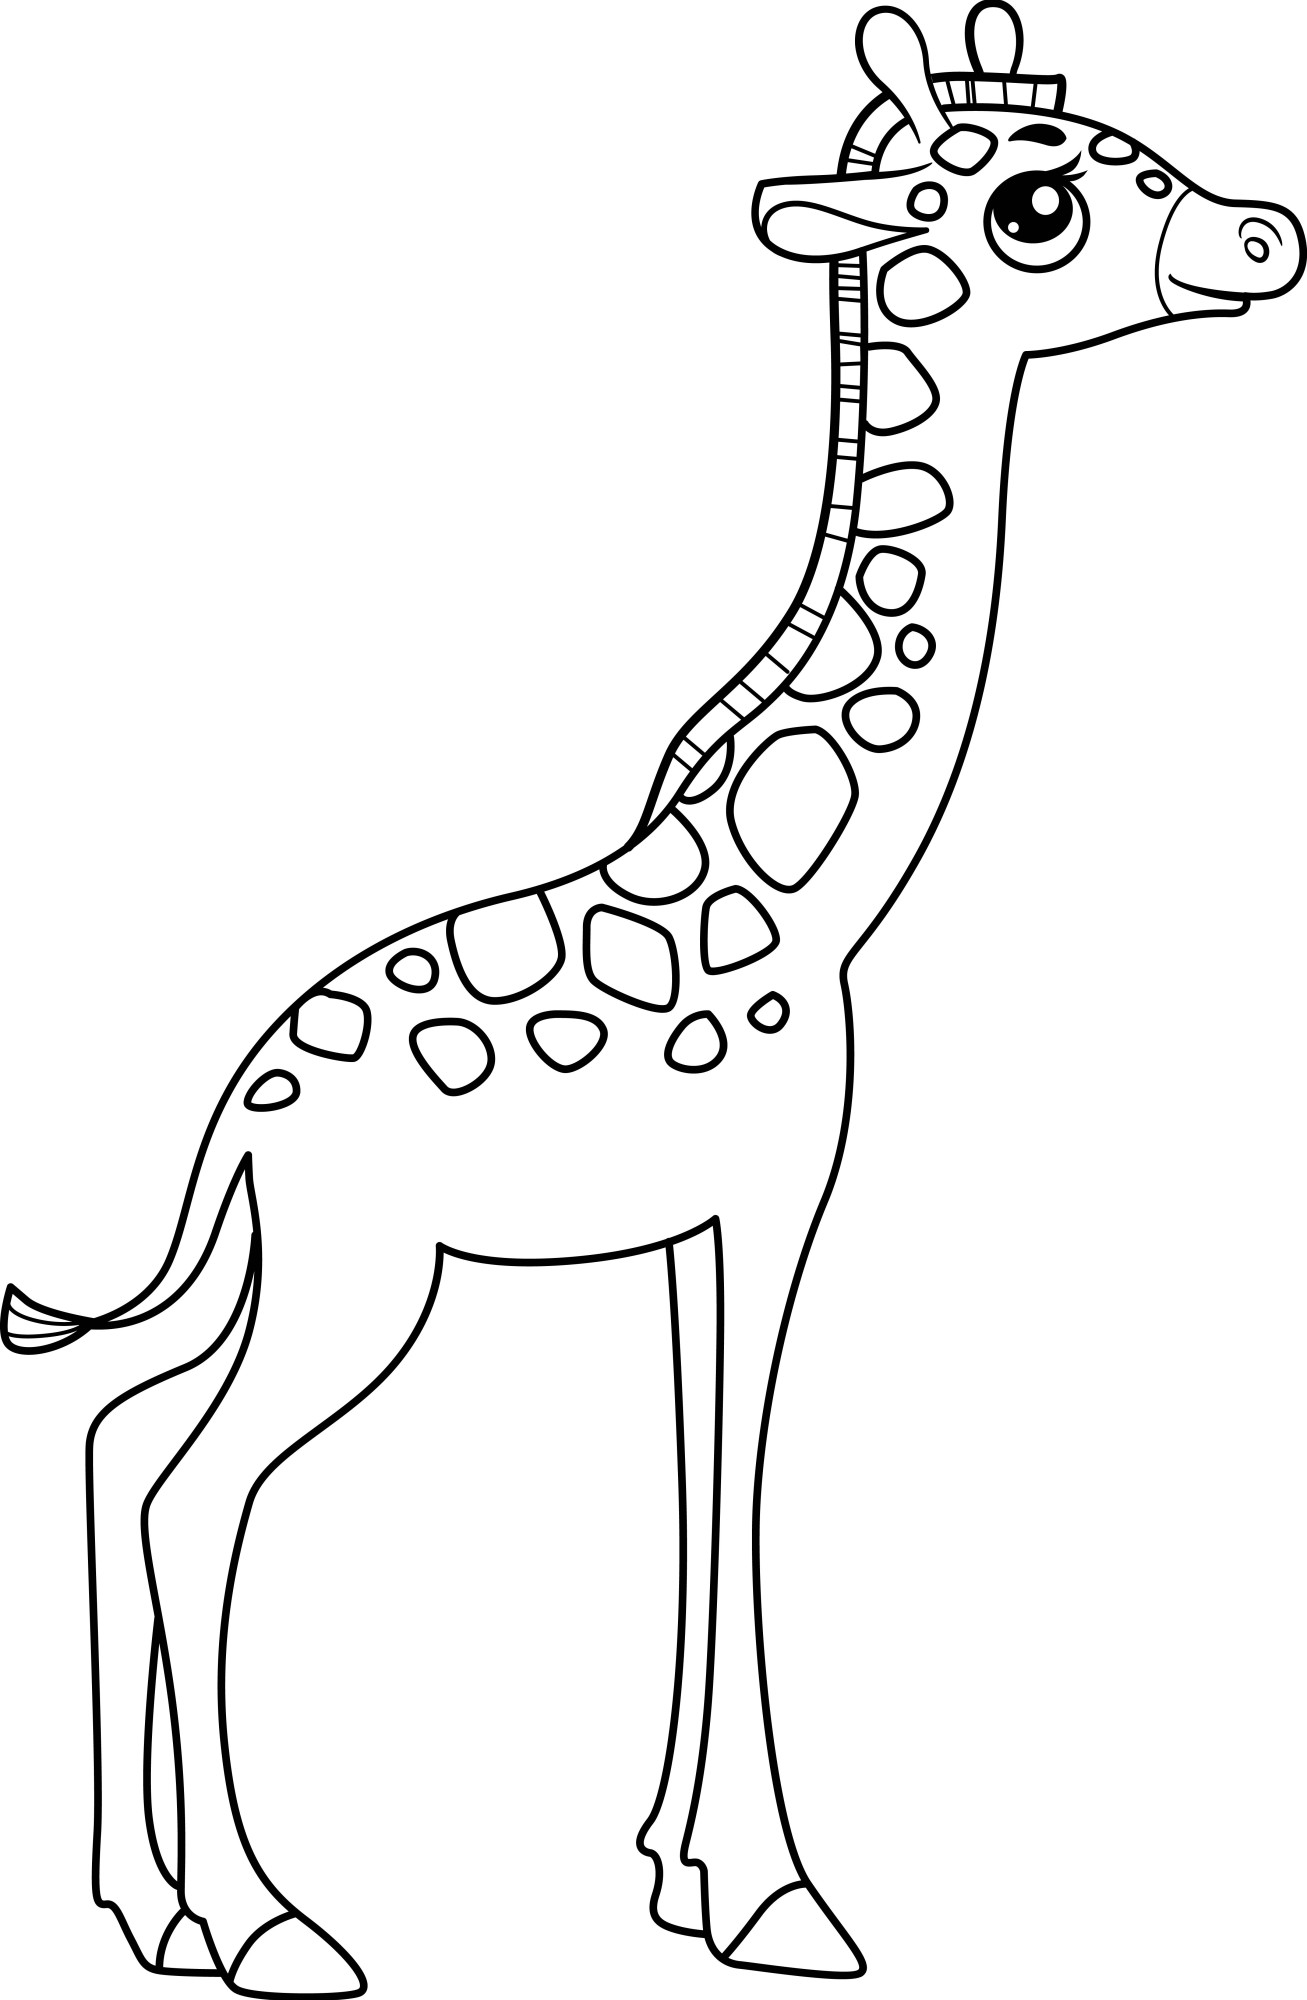 Раскраска для детей: симпатичный жираф